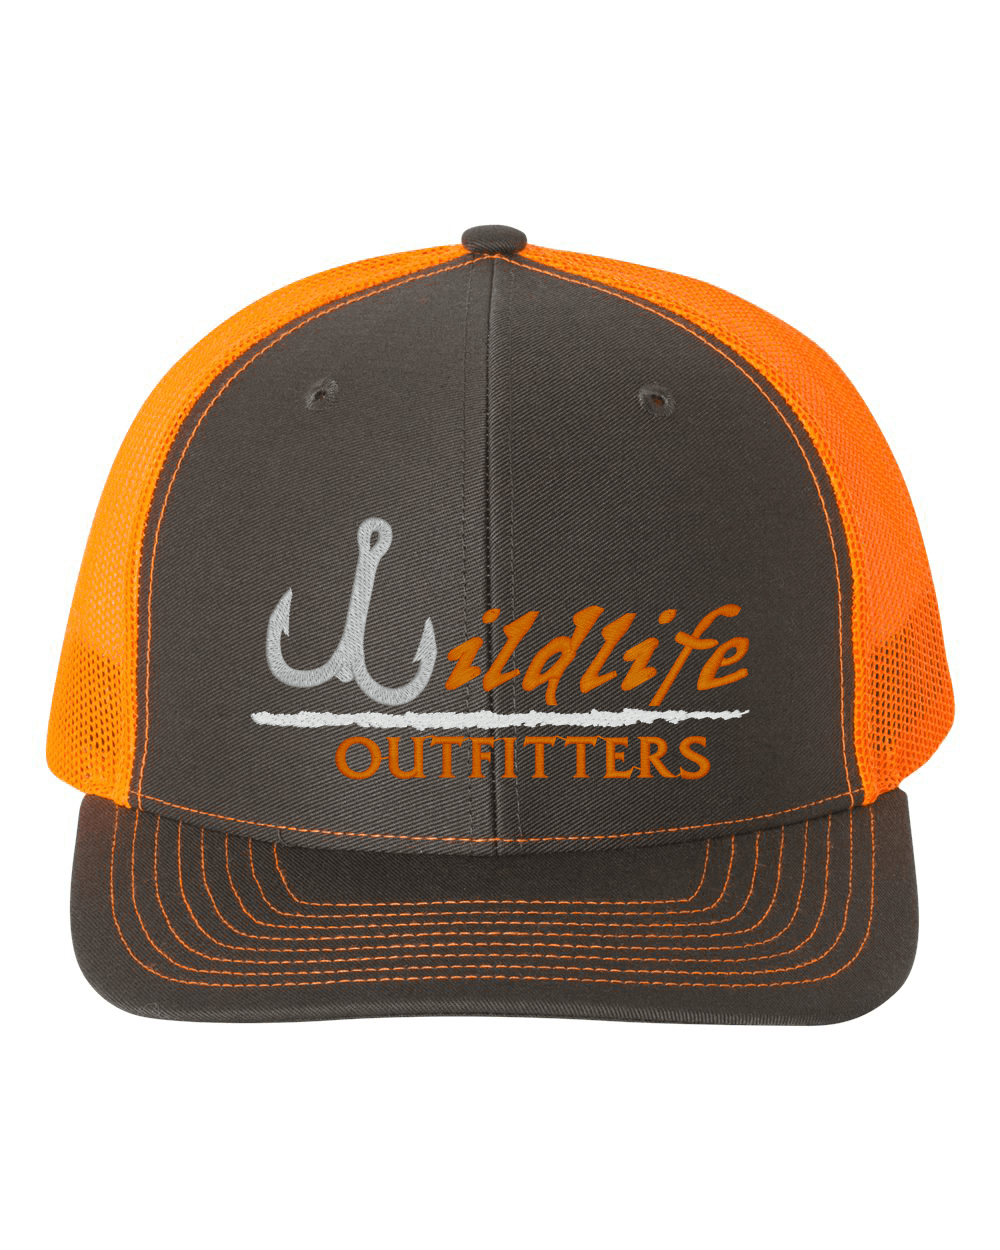 Neon Orange/Charcoal Snapback, Funny Fishing Hats